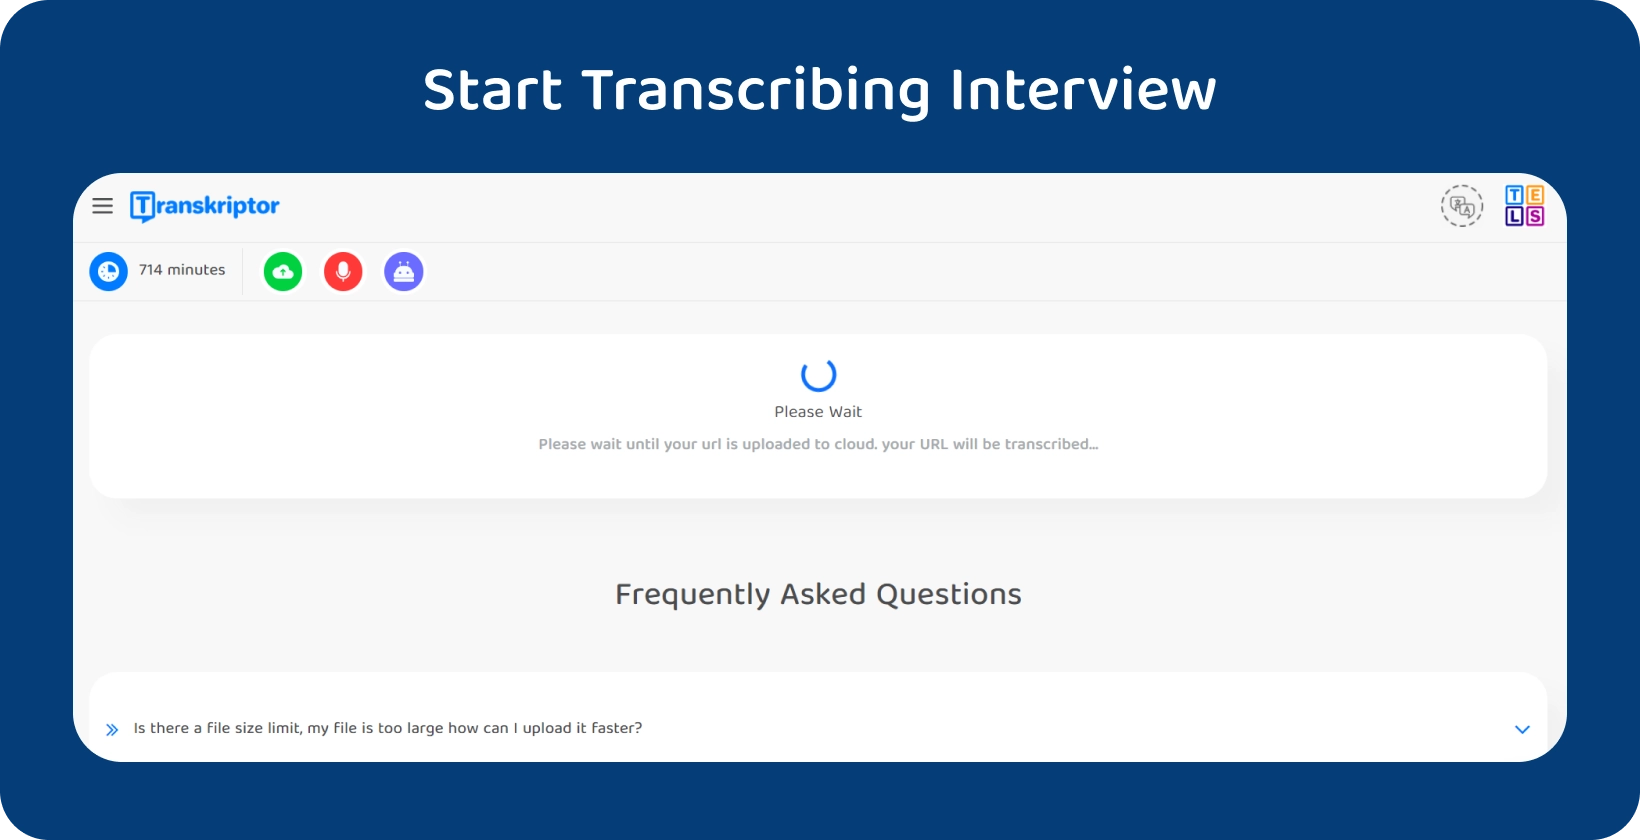 Započnite transkripciju disertacije Transkriptor, pokazujući 714-minutni intervju koji čeka na obradu.